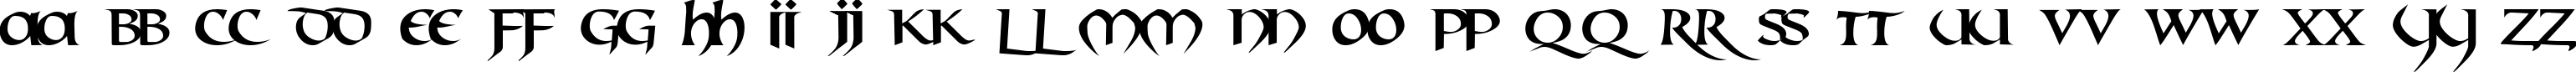 Пример написания английского алфавита шрифтом Mael